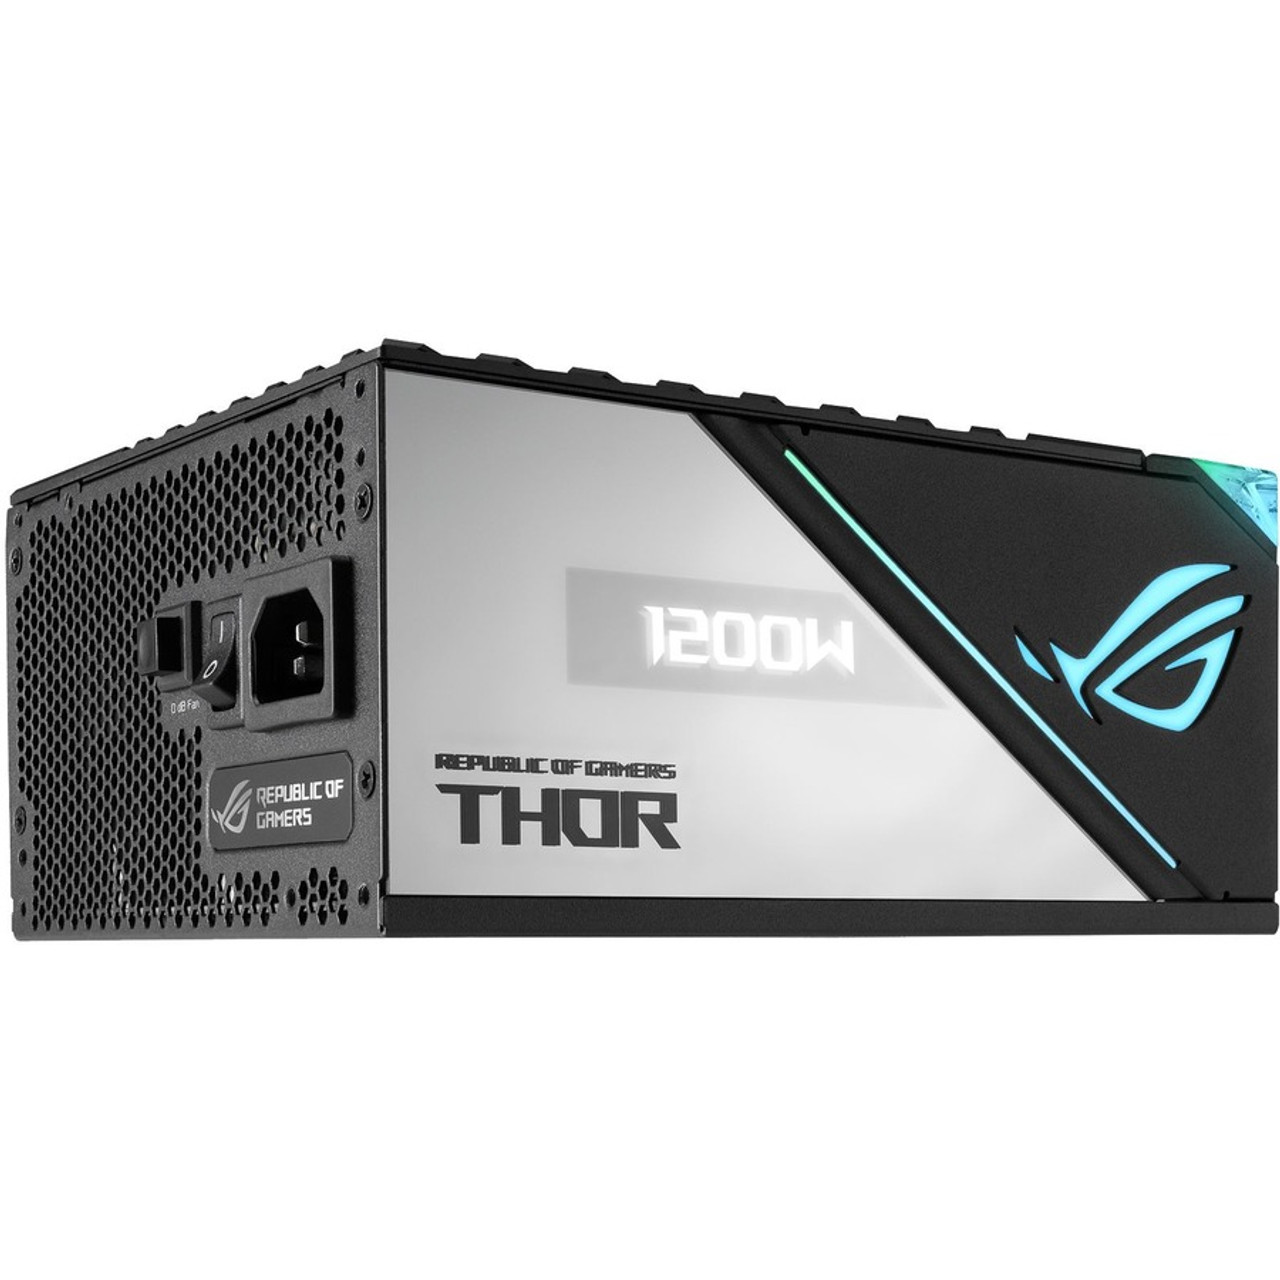 Asus ROG Thor Platinum 1200W Power Supply (rog-thor-1200p2-gaming